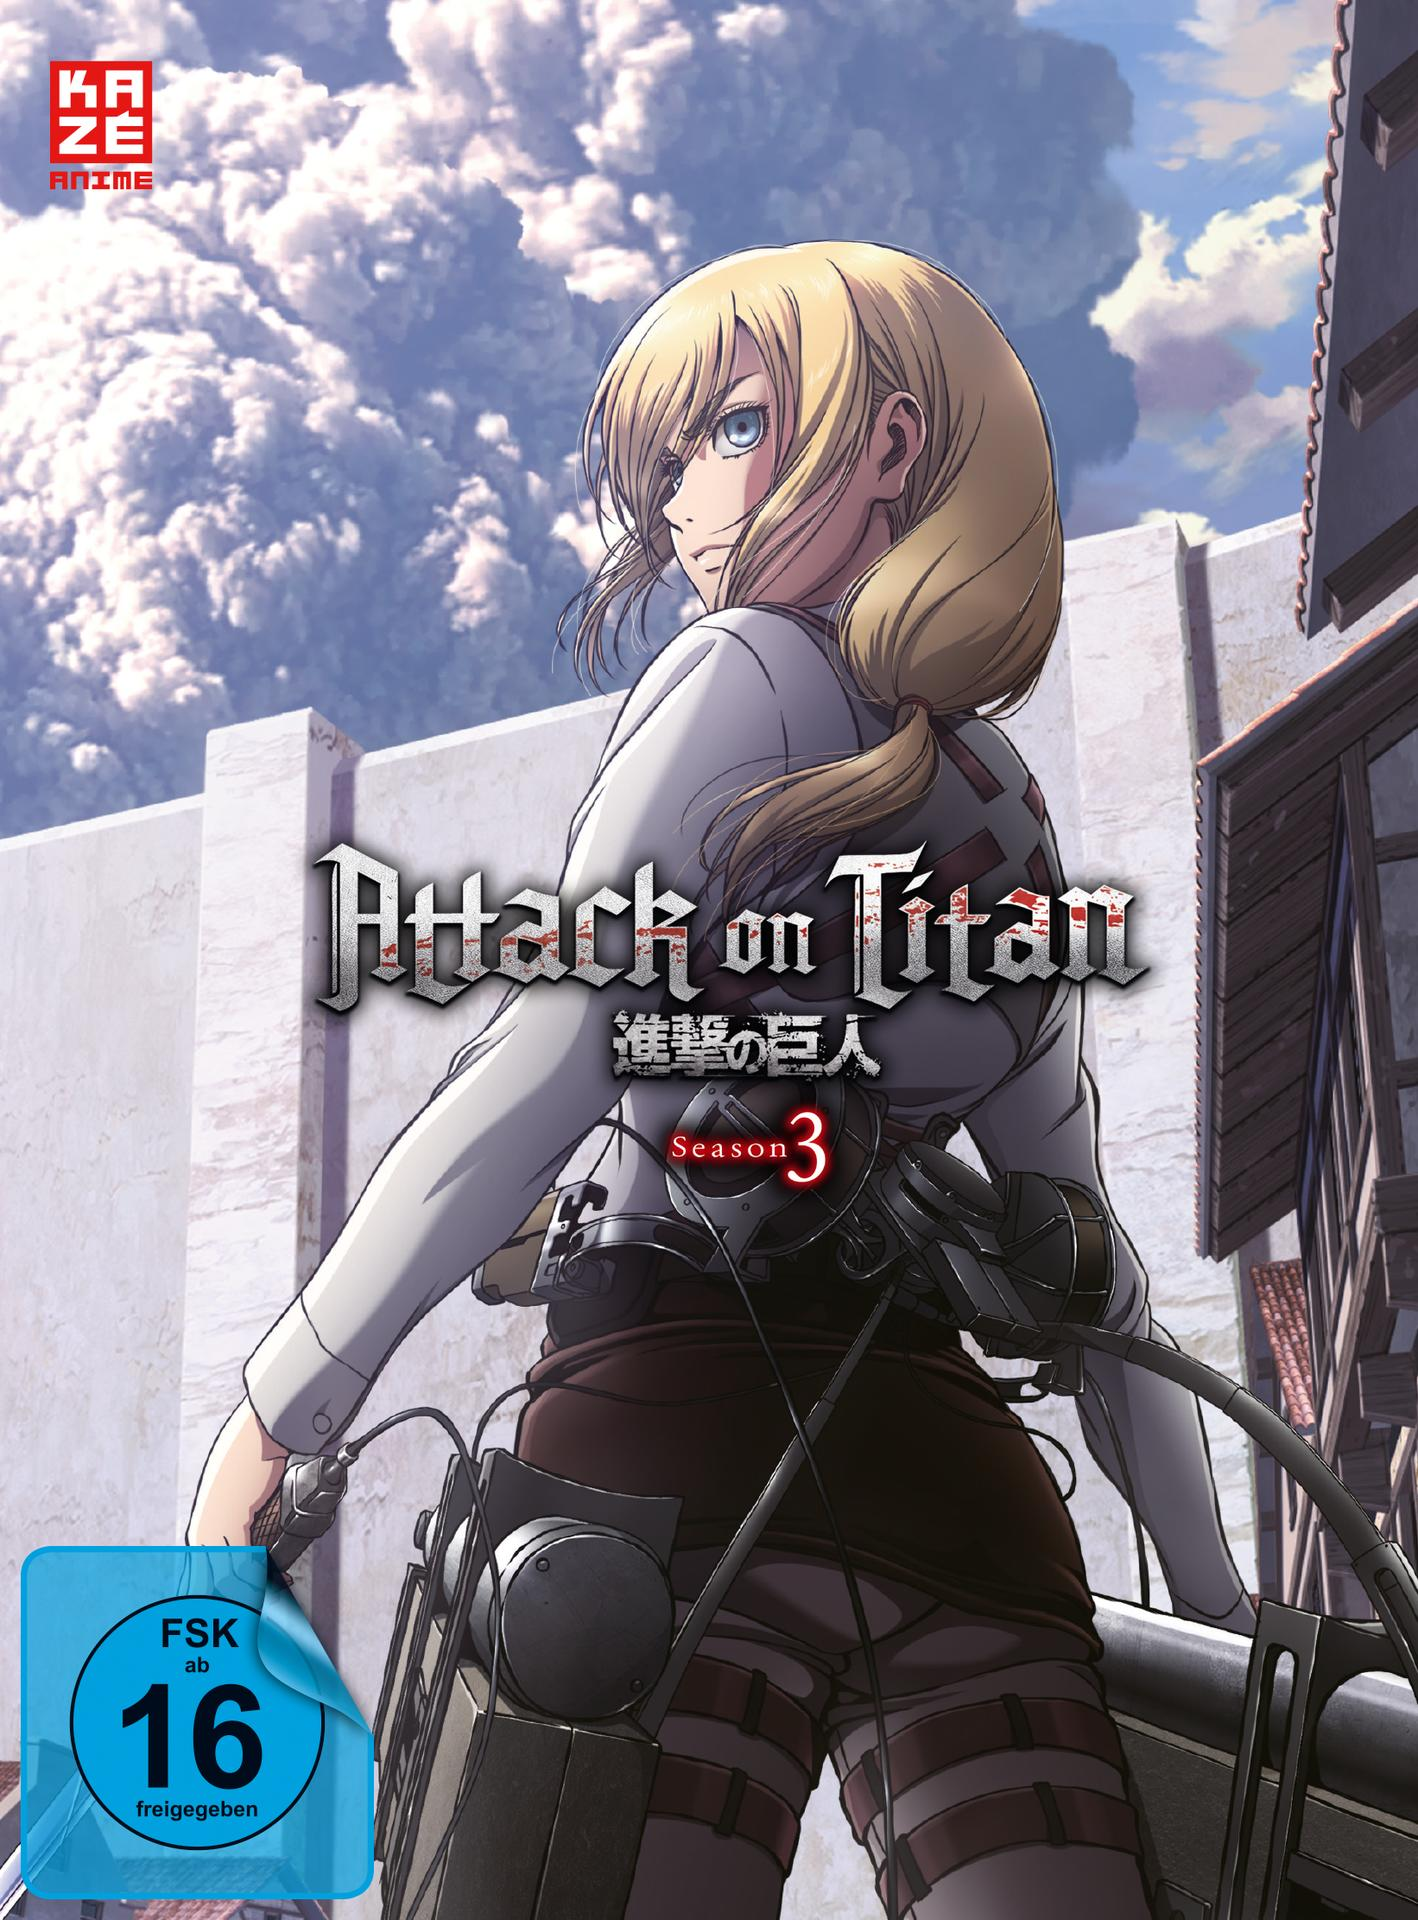 on DVD Vol.2 - 3 - Attack Titan Staffel